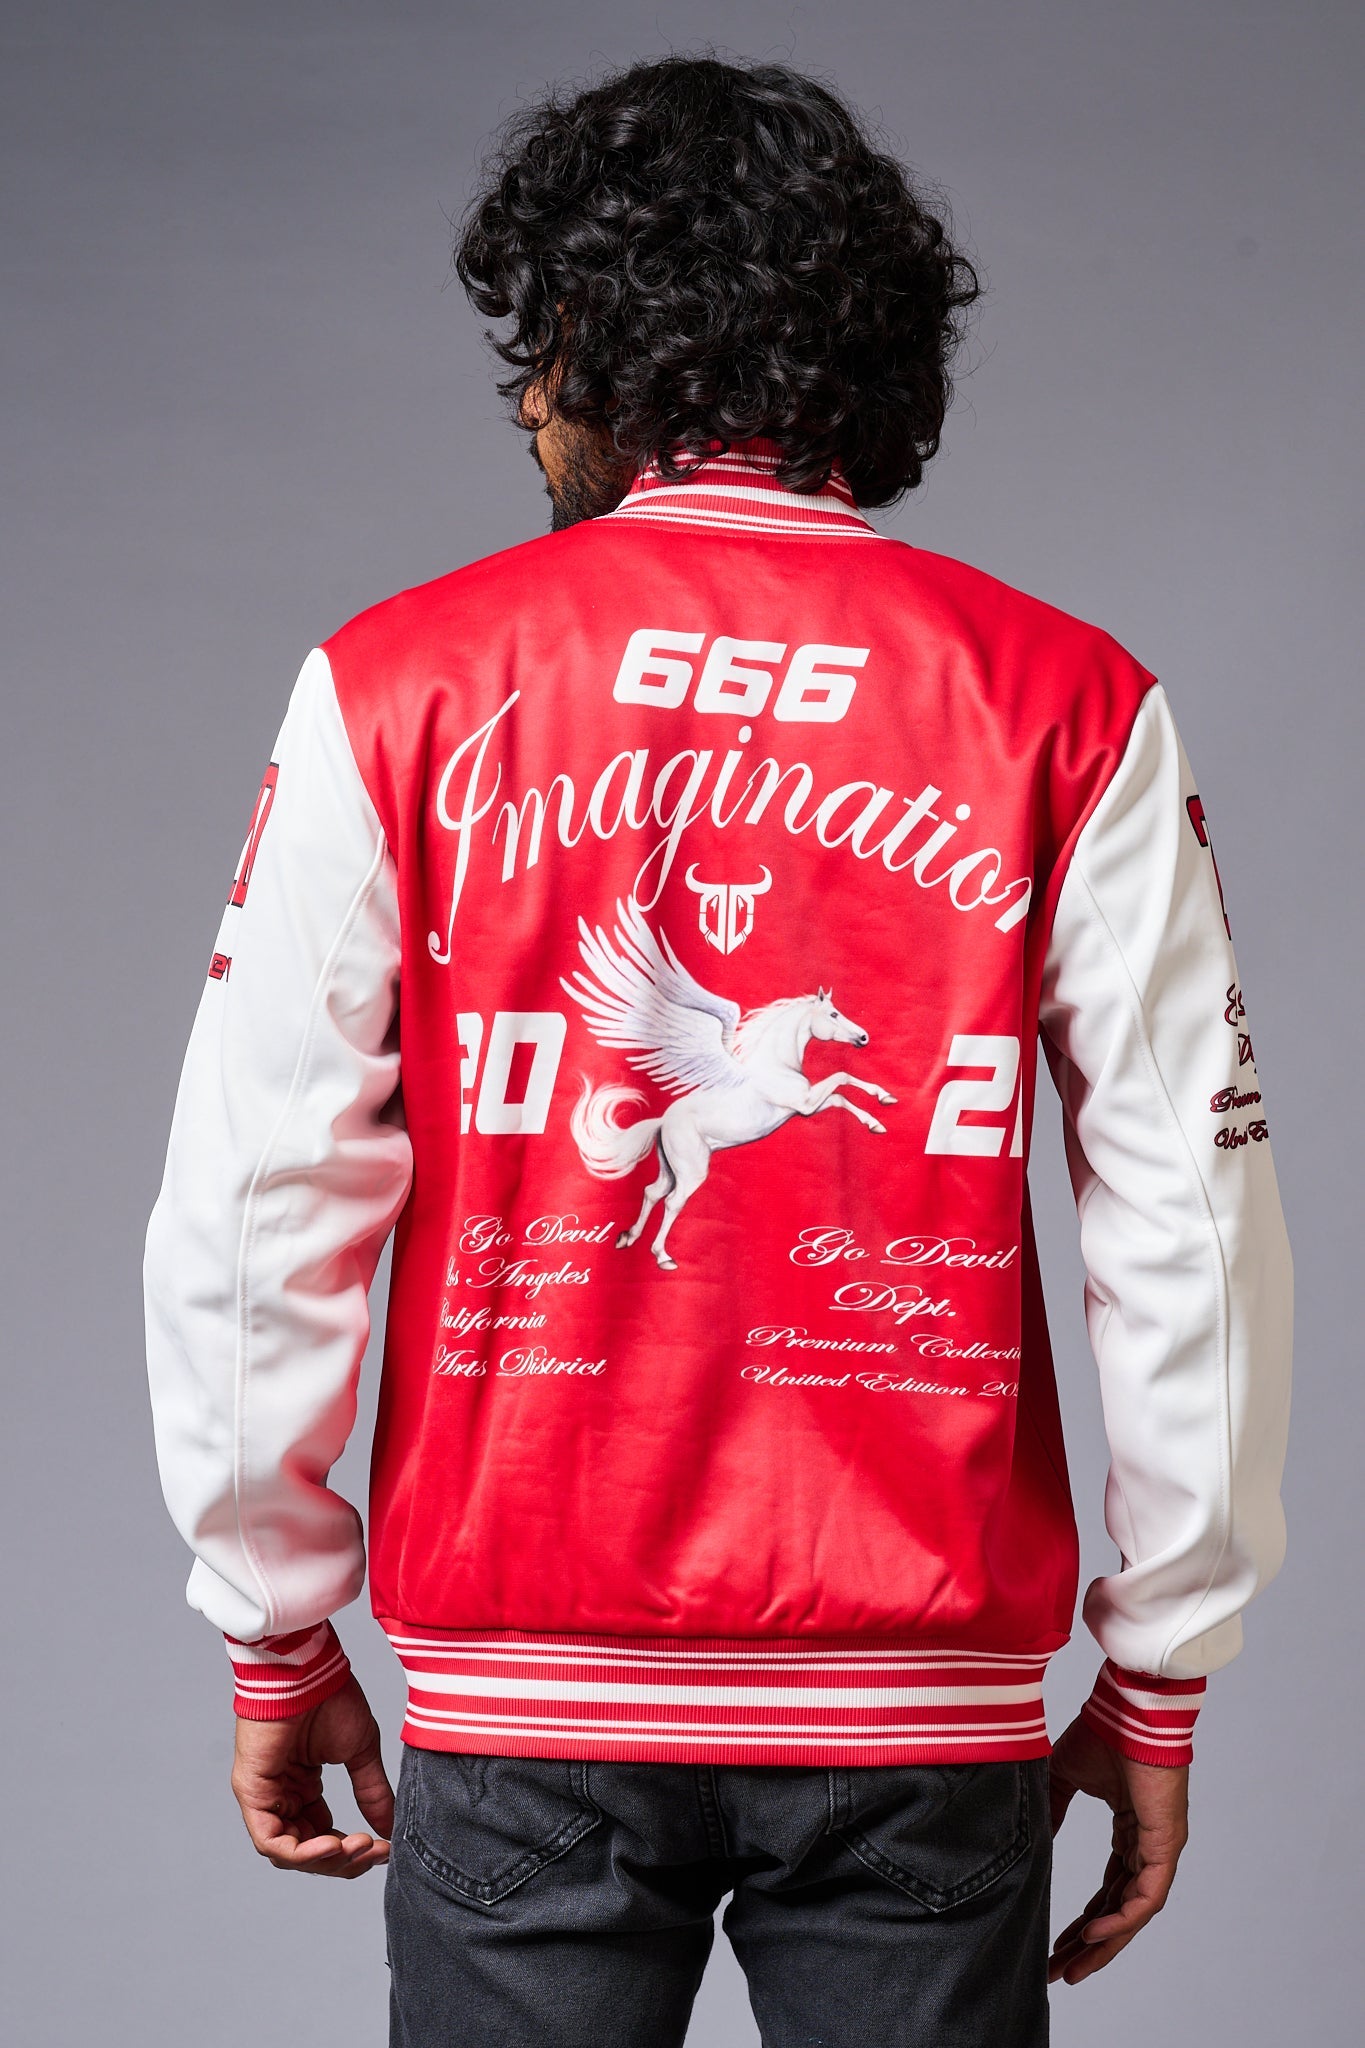 666 Imagination Printed Red & White Varsity Jacket for Men - Go Devil